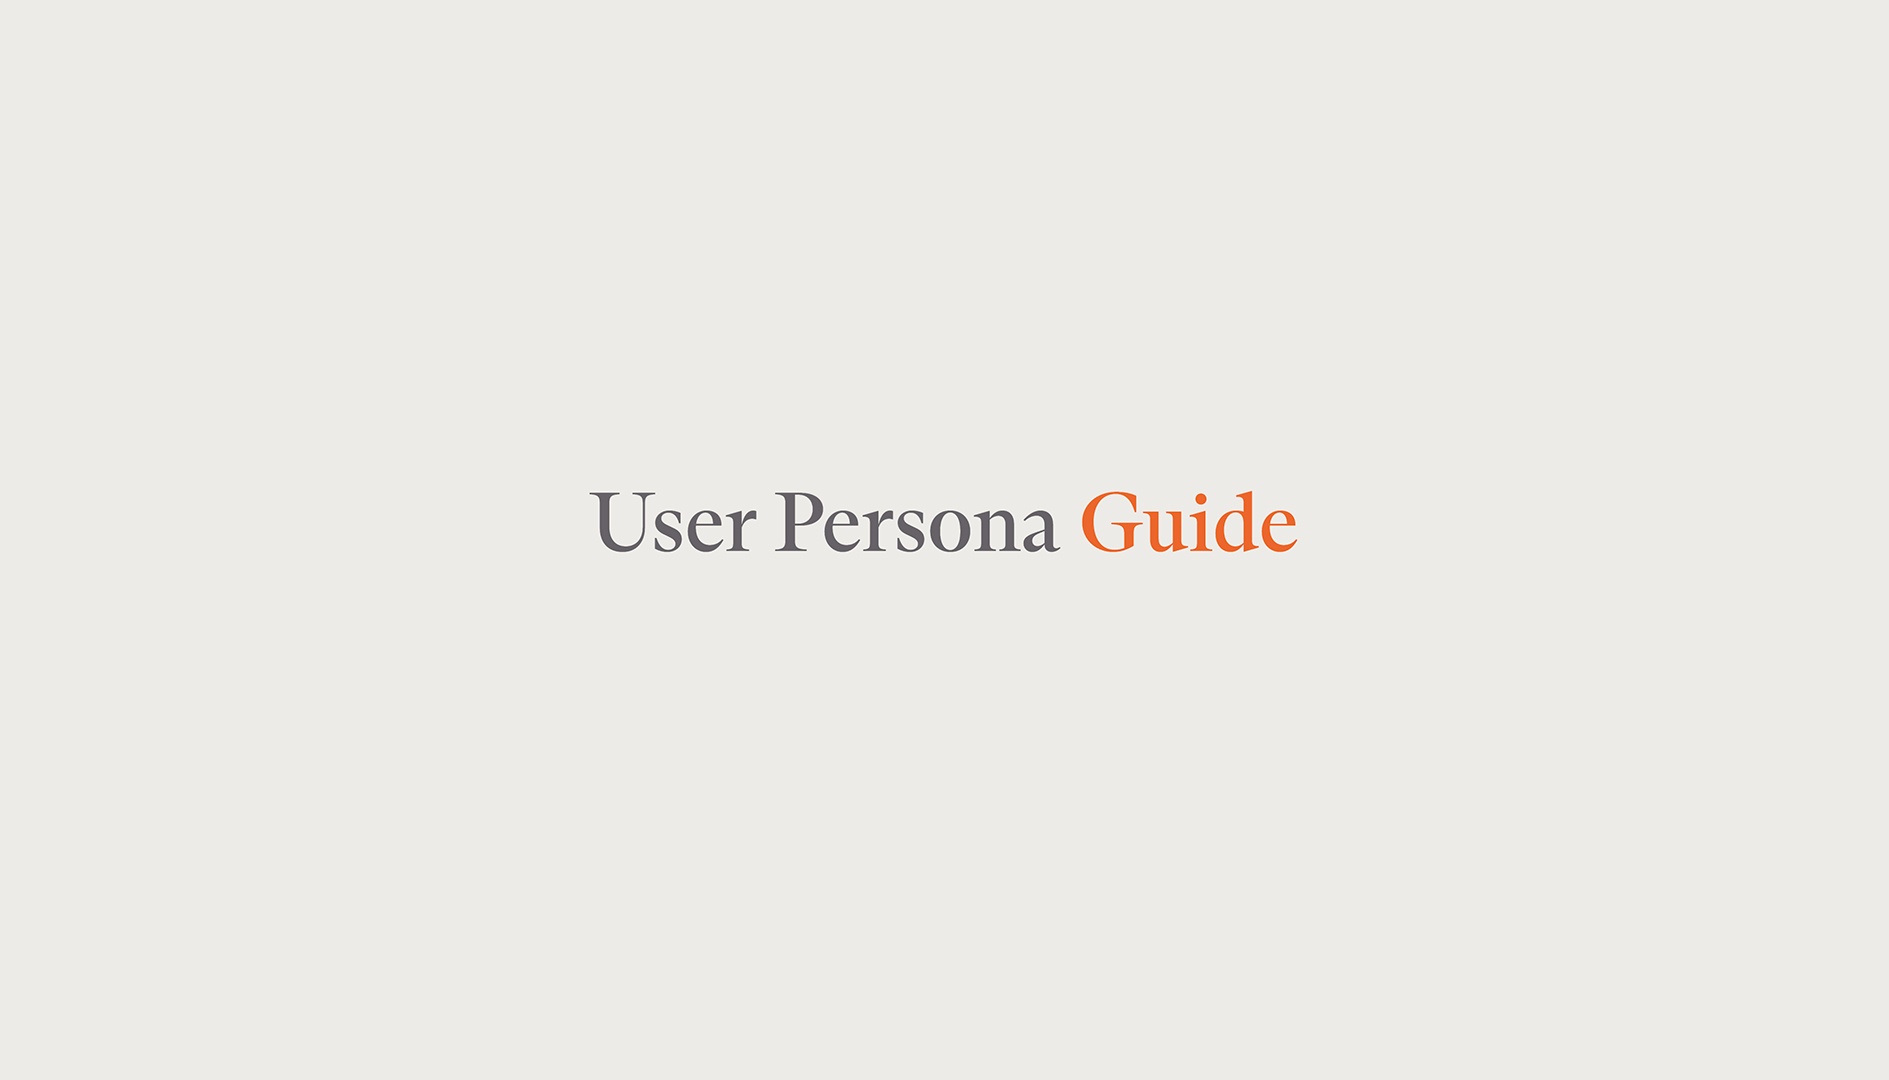 User Persona Guide - Intro